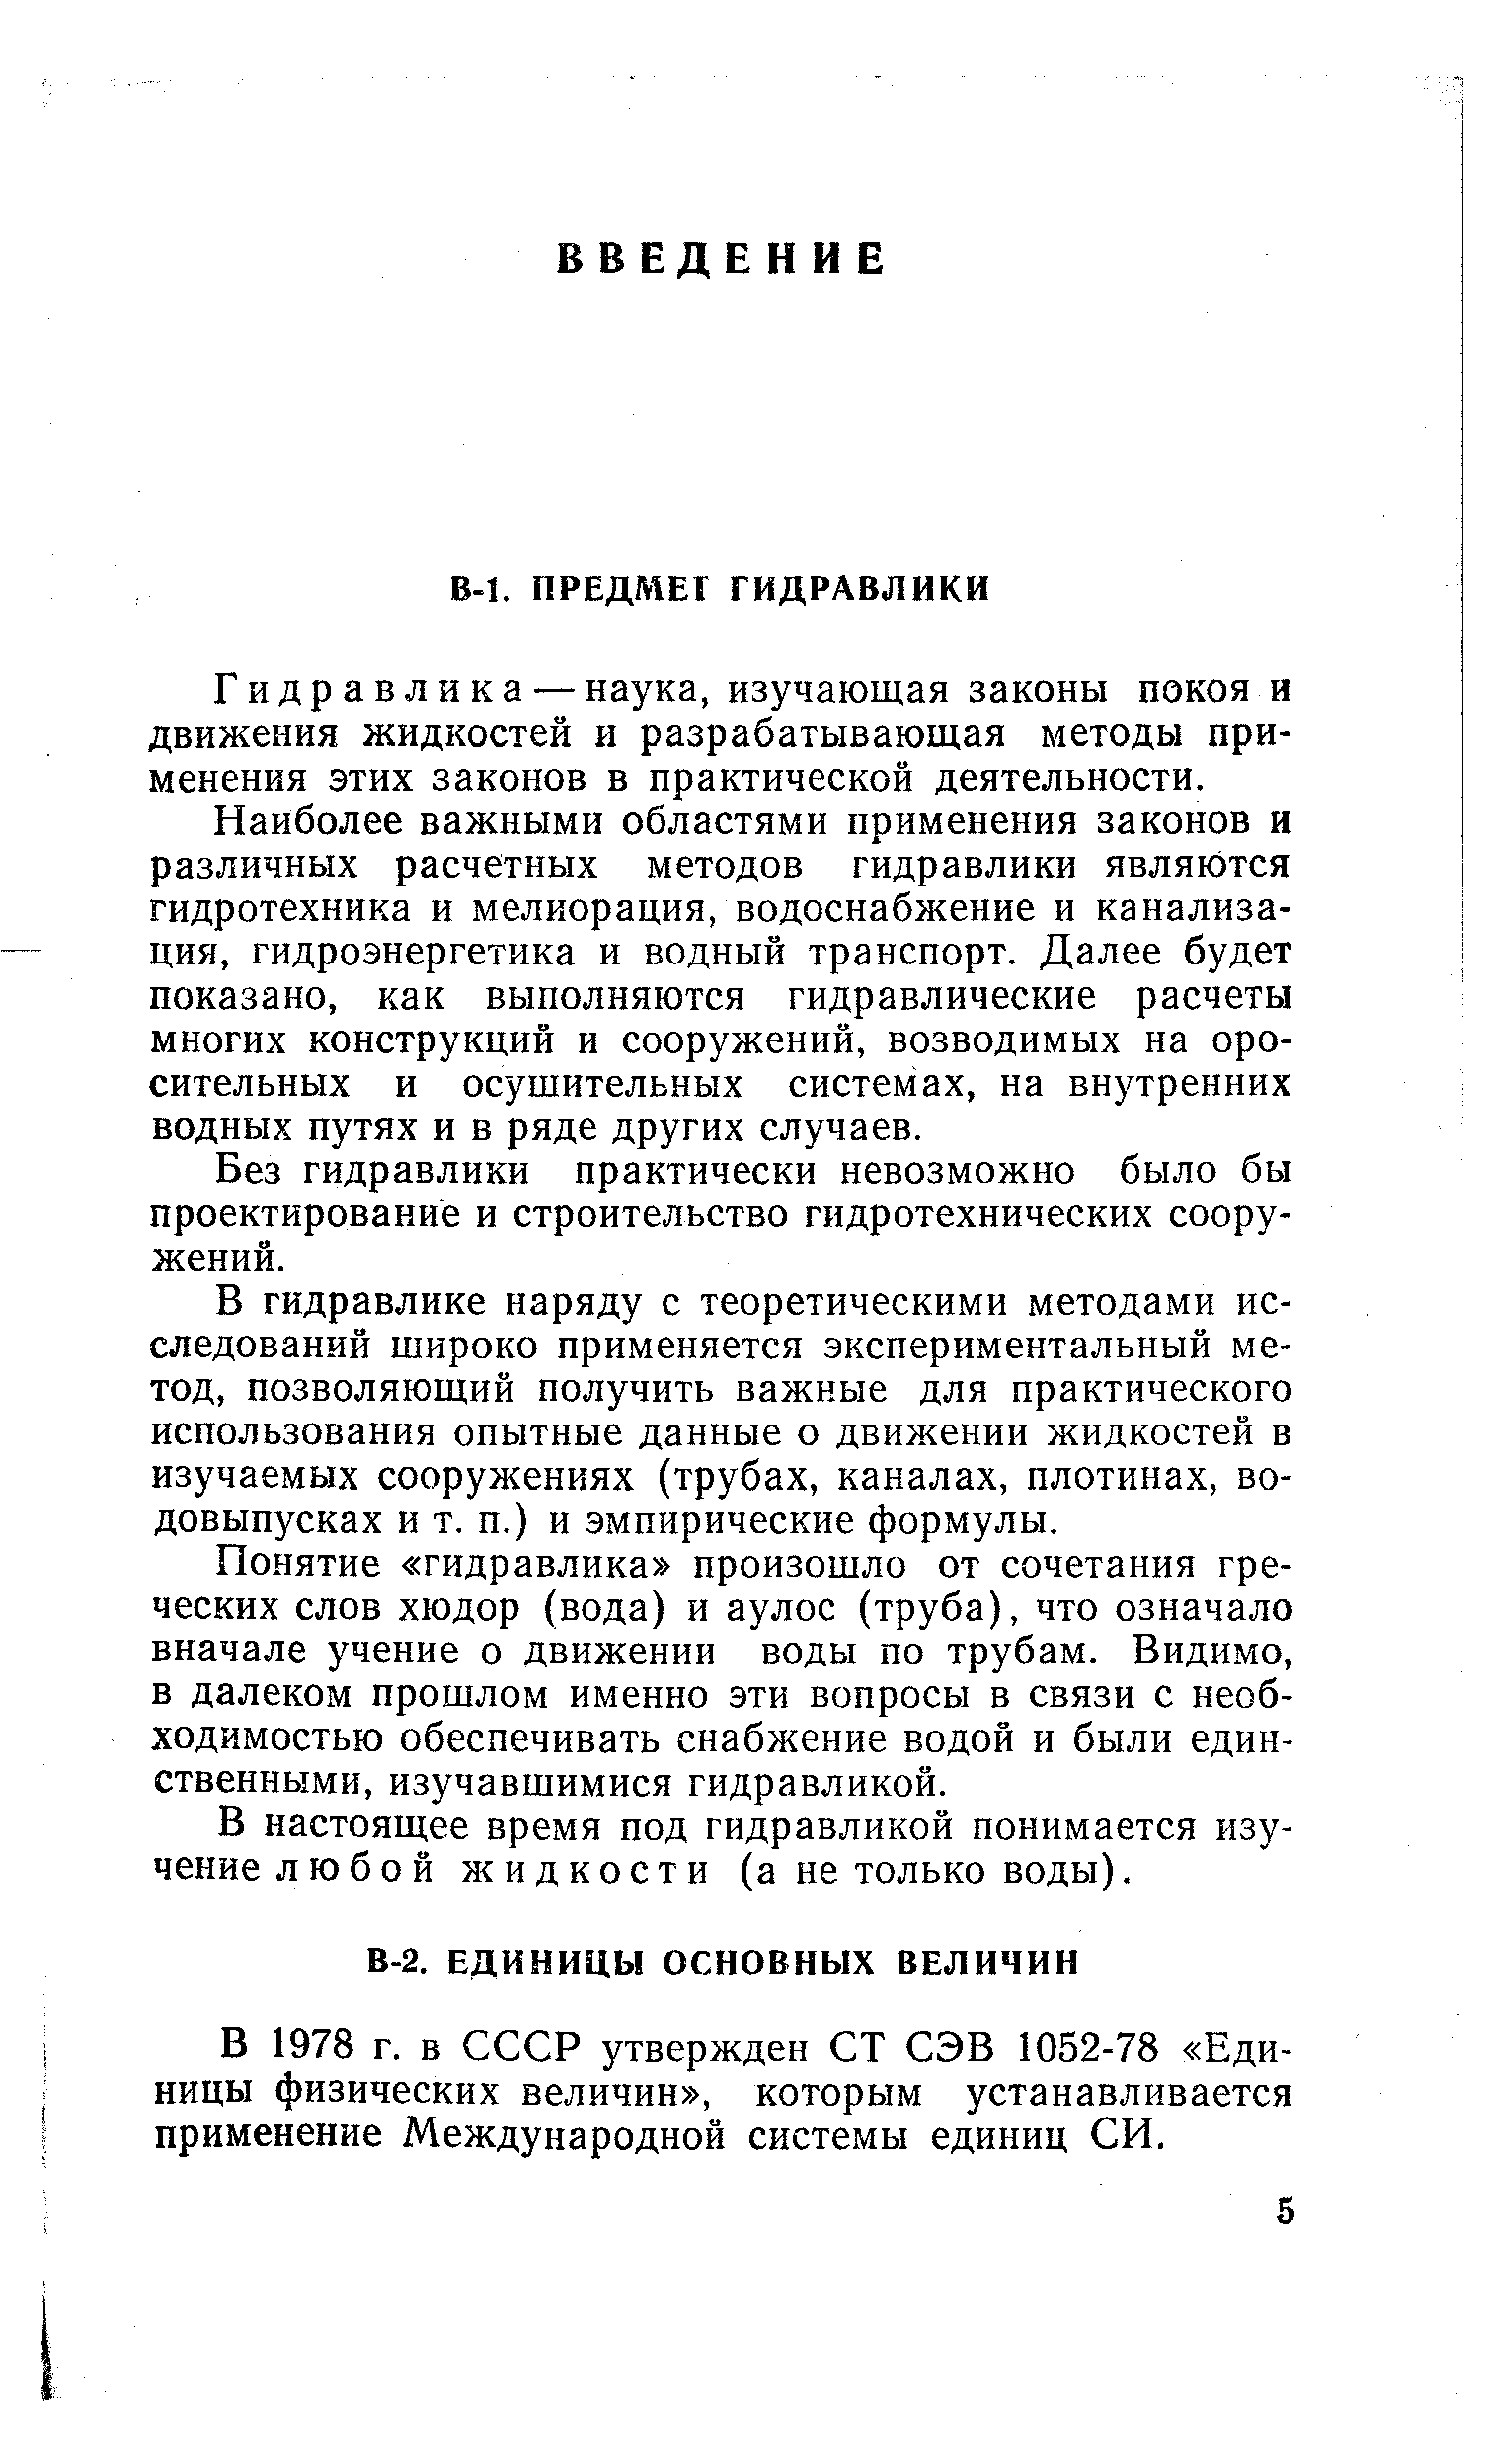 В 1978 г. в СССР утвержден СТ СЭВ 1052-78 Единицы физических величин , которым устанавливается применение Международной системы единиц СИ.
